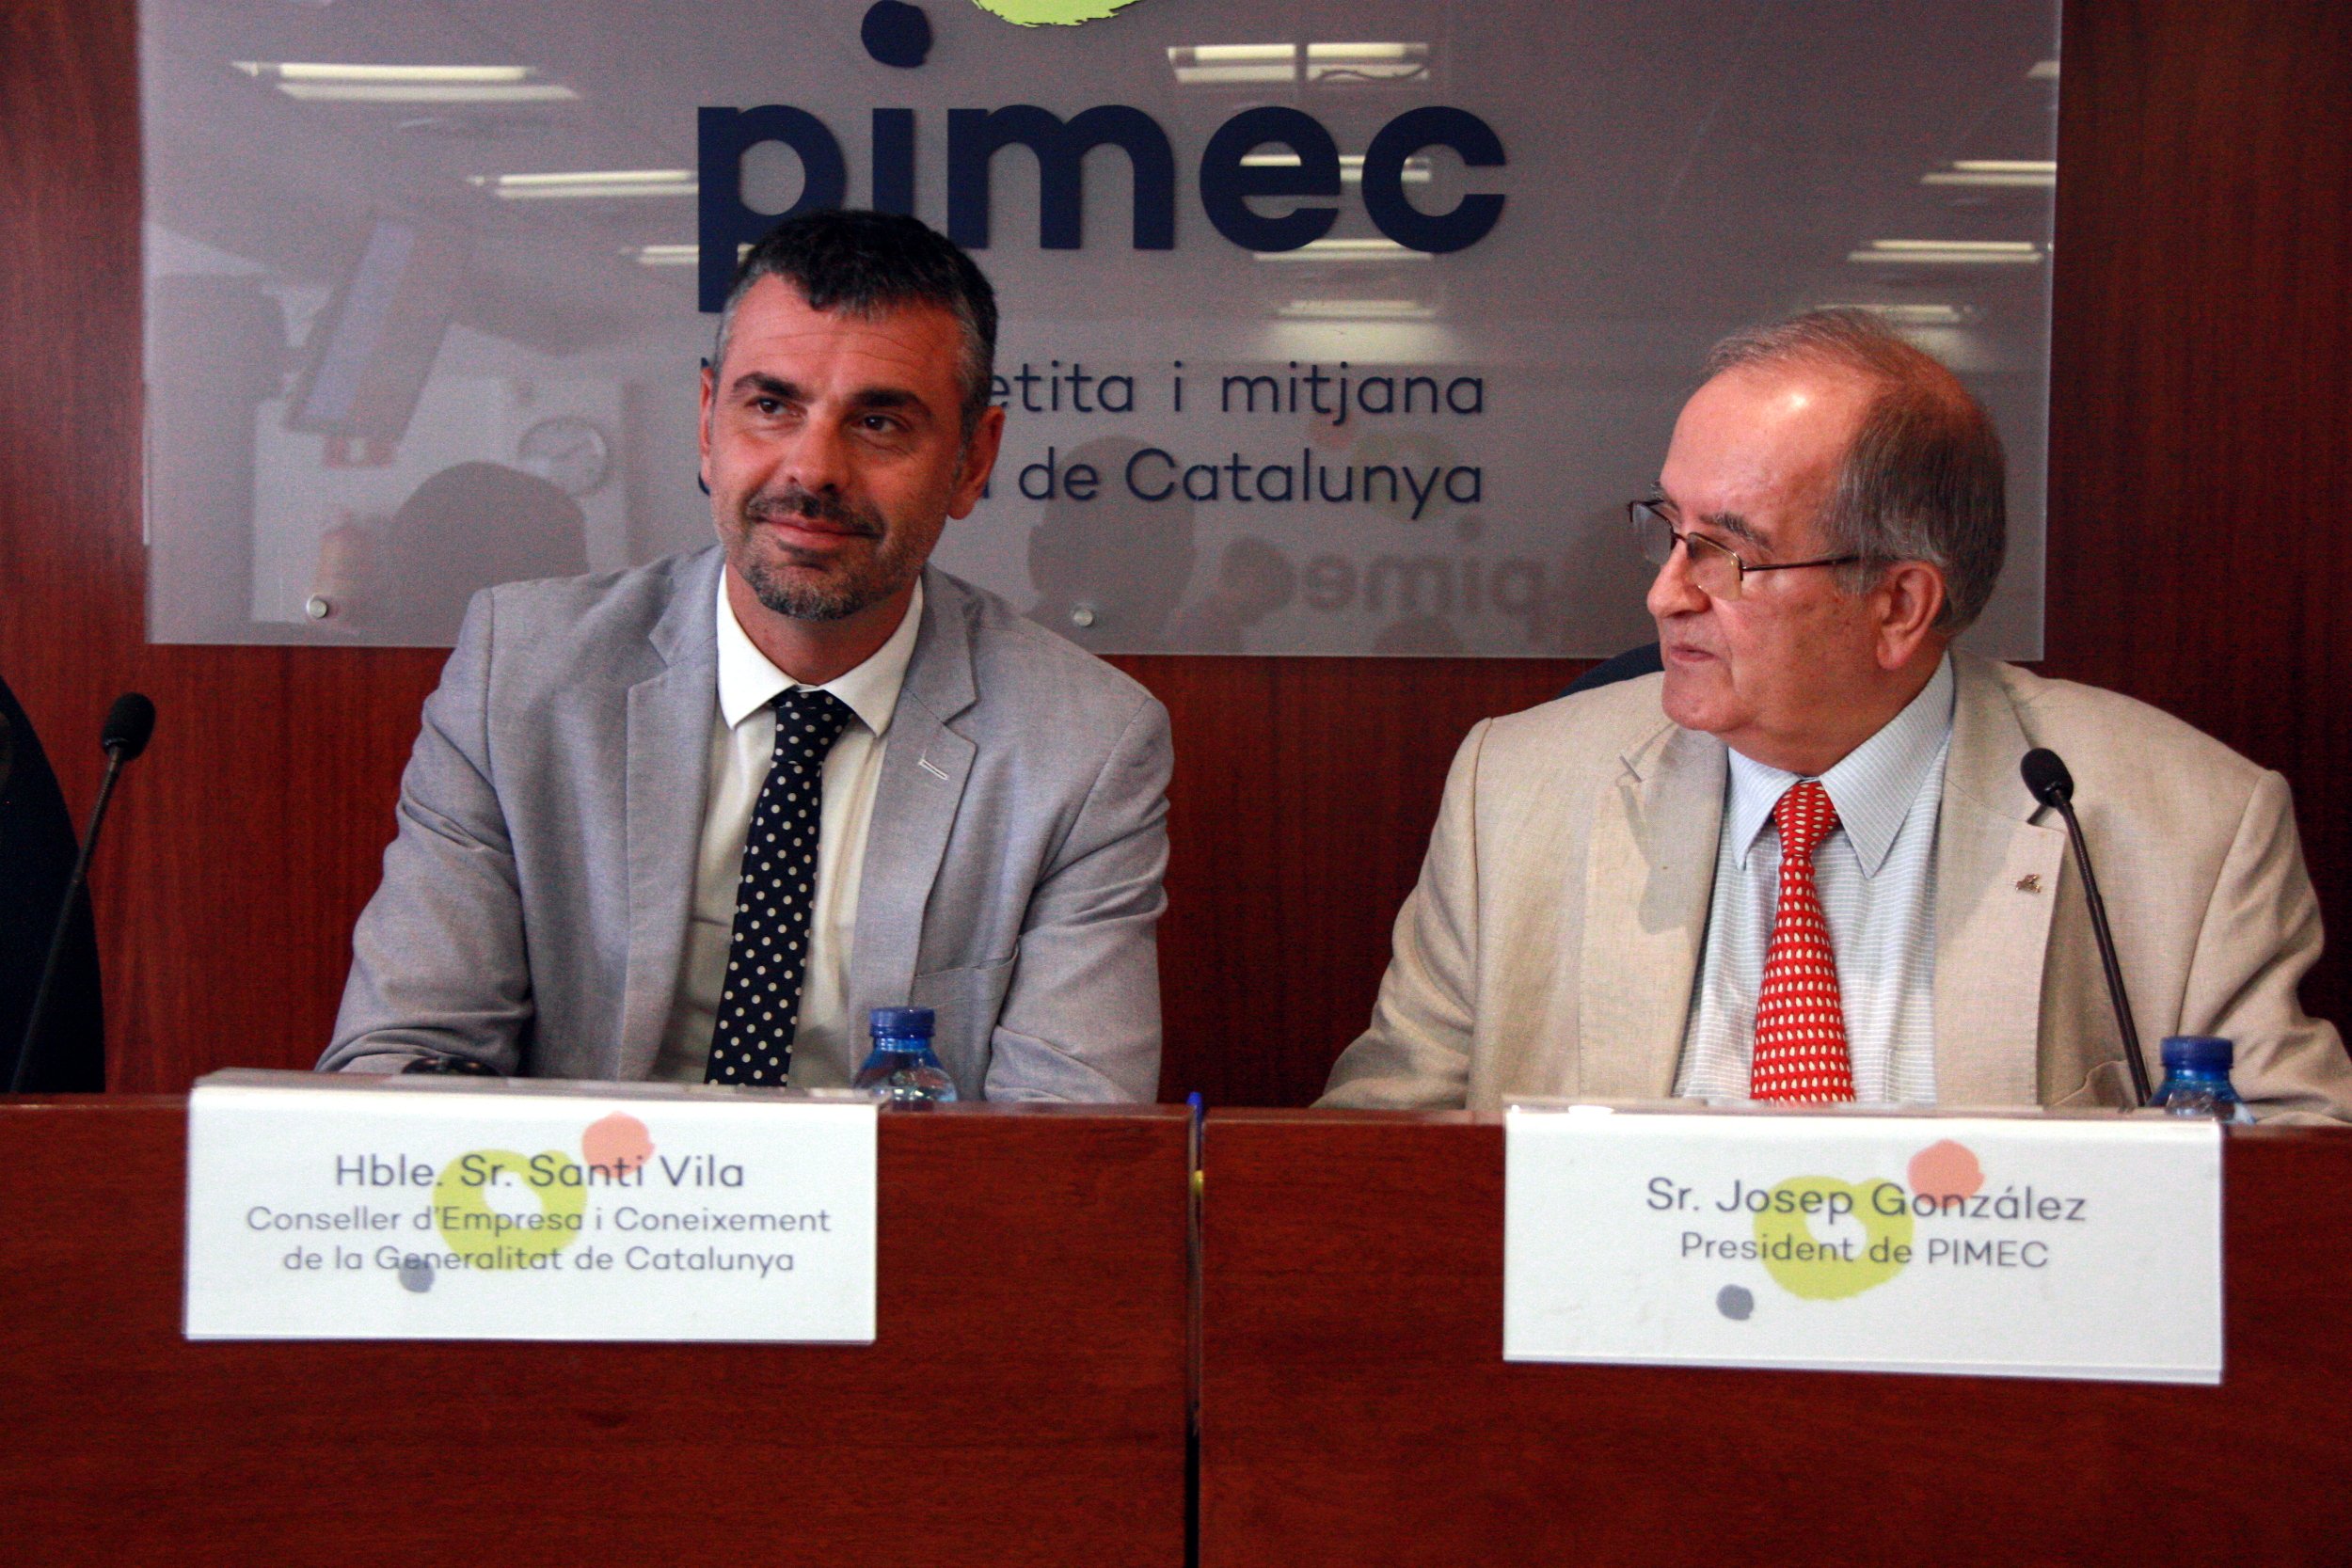 Las pymes catalanas ganan el pulso a las grandes empresas